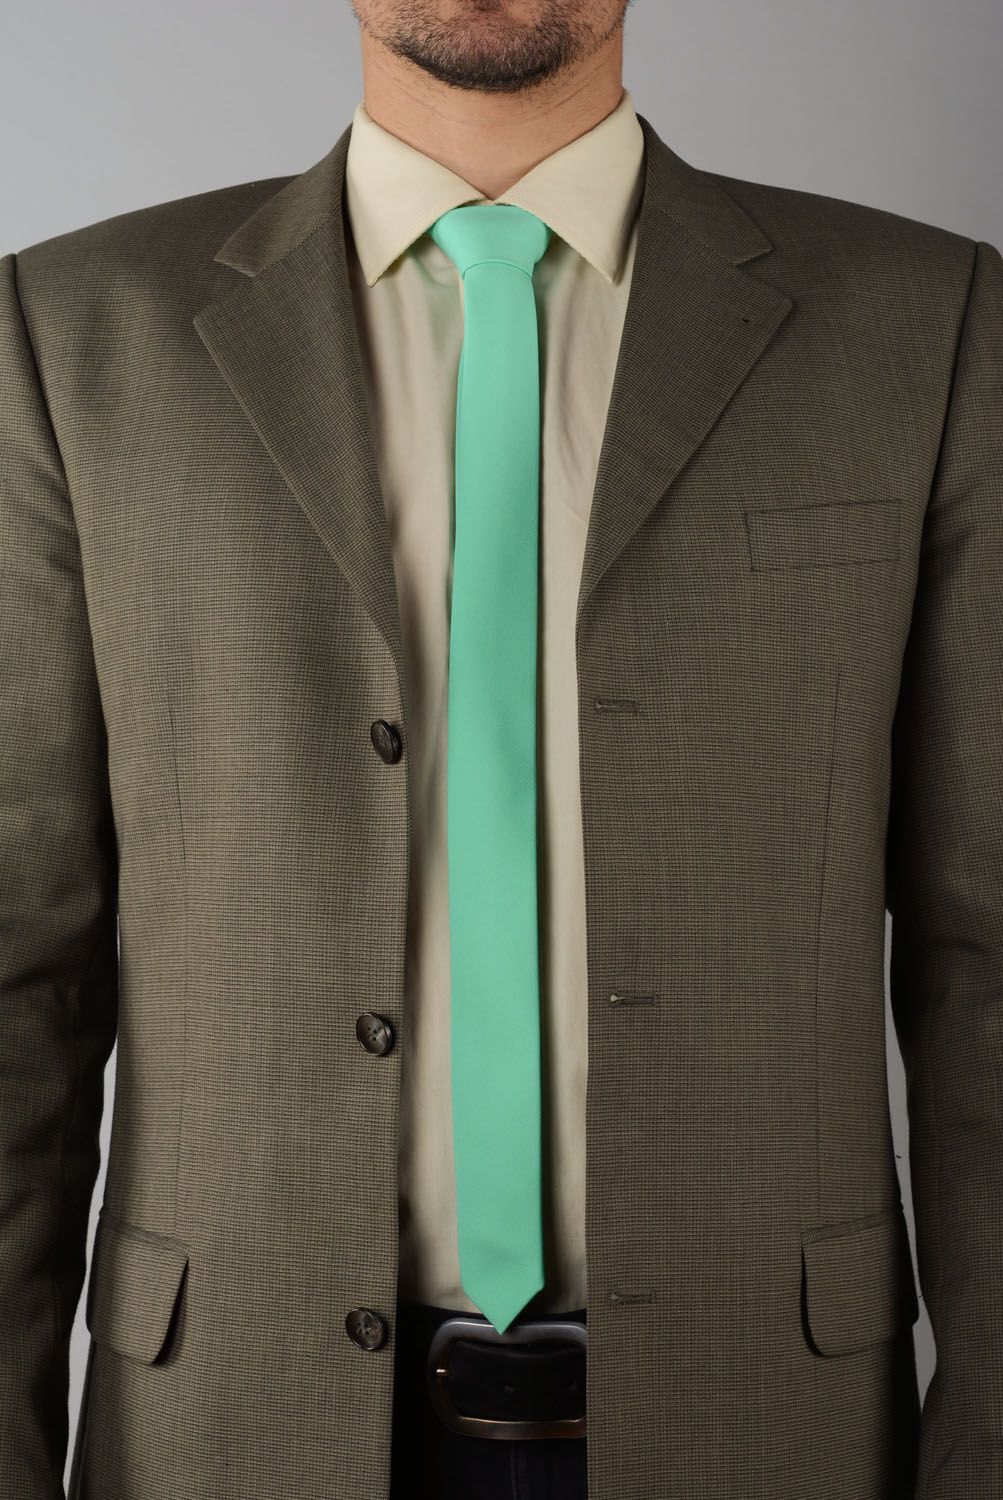 Cravate menthe en gabardine faite main photo 1